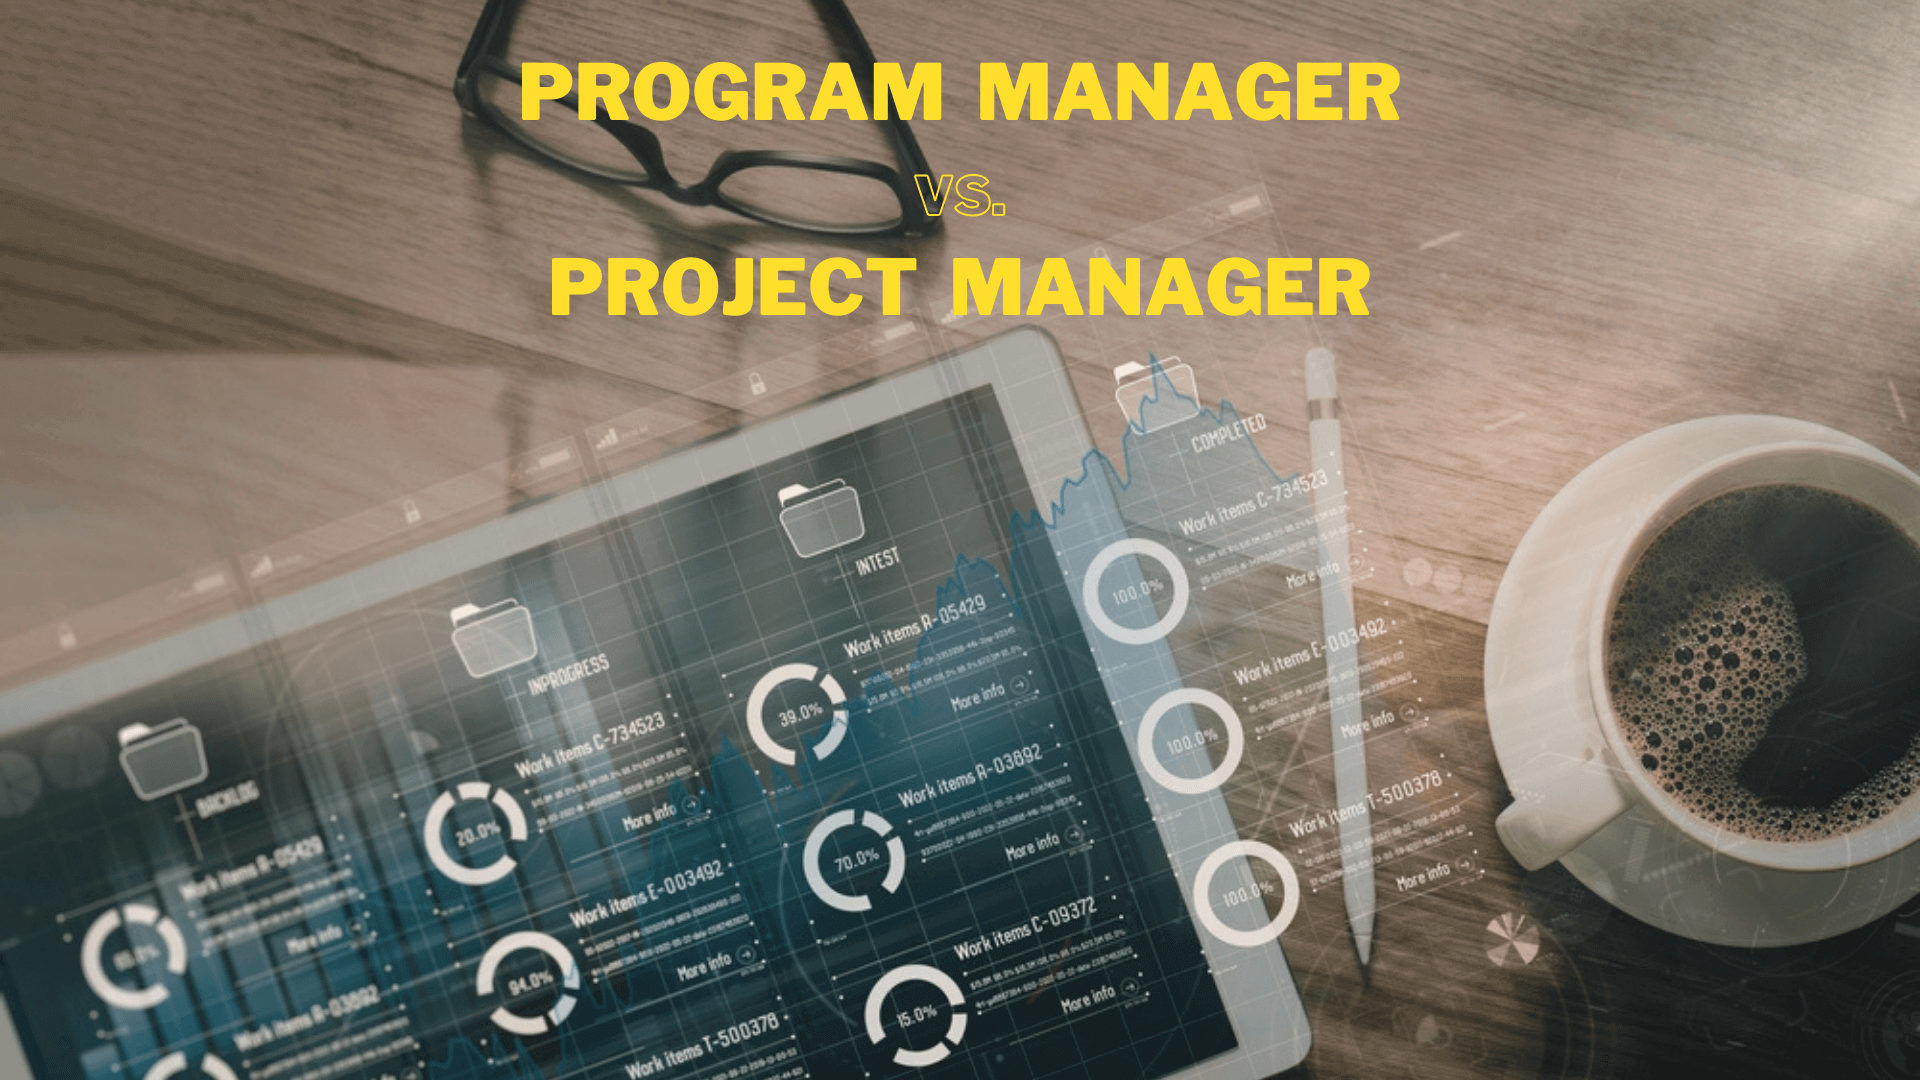 program management vs project management, project manager vs program manager
